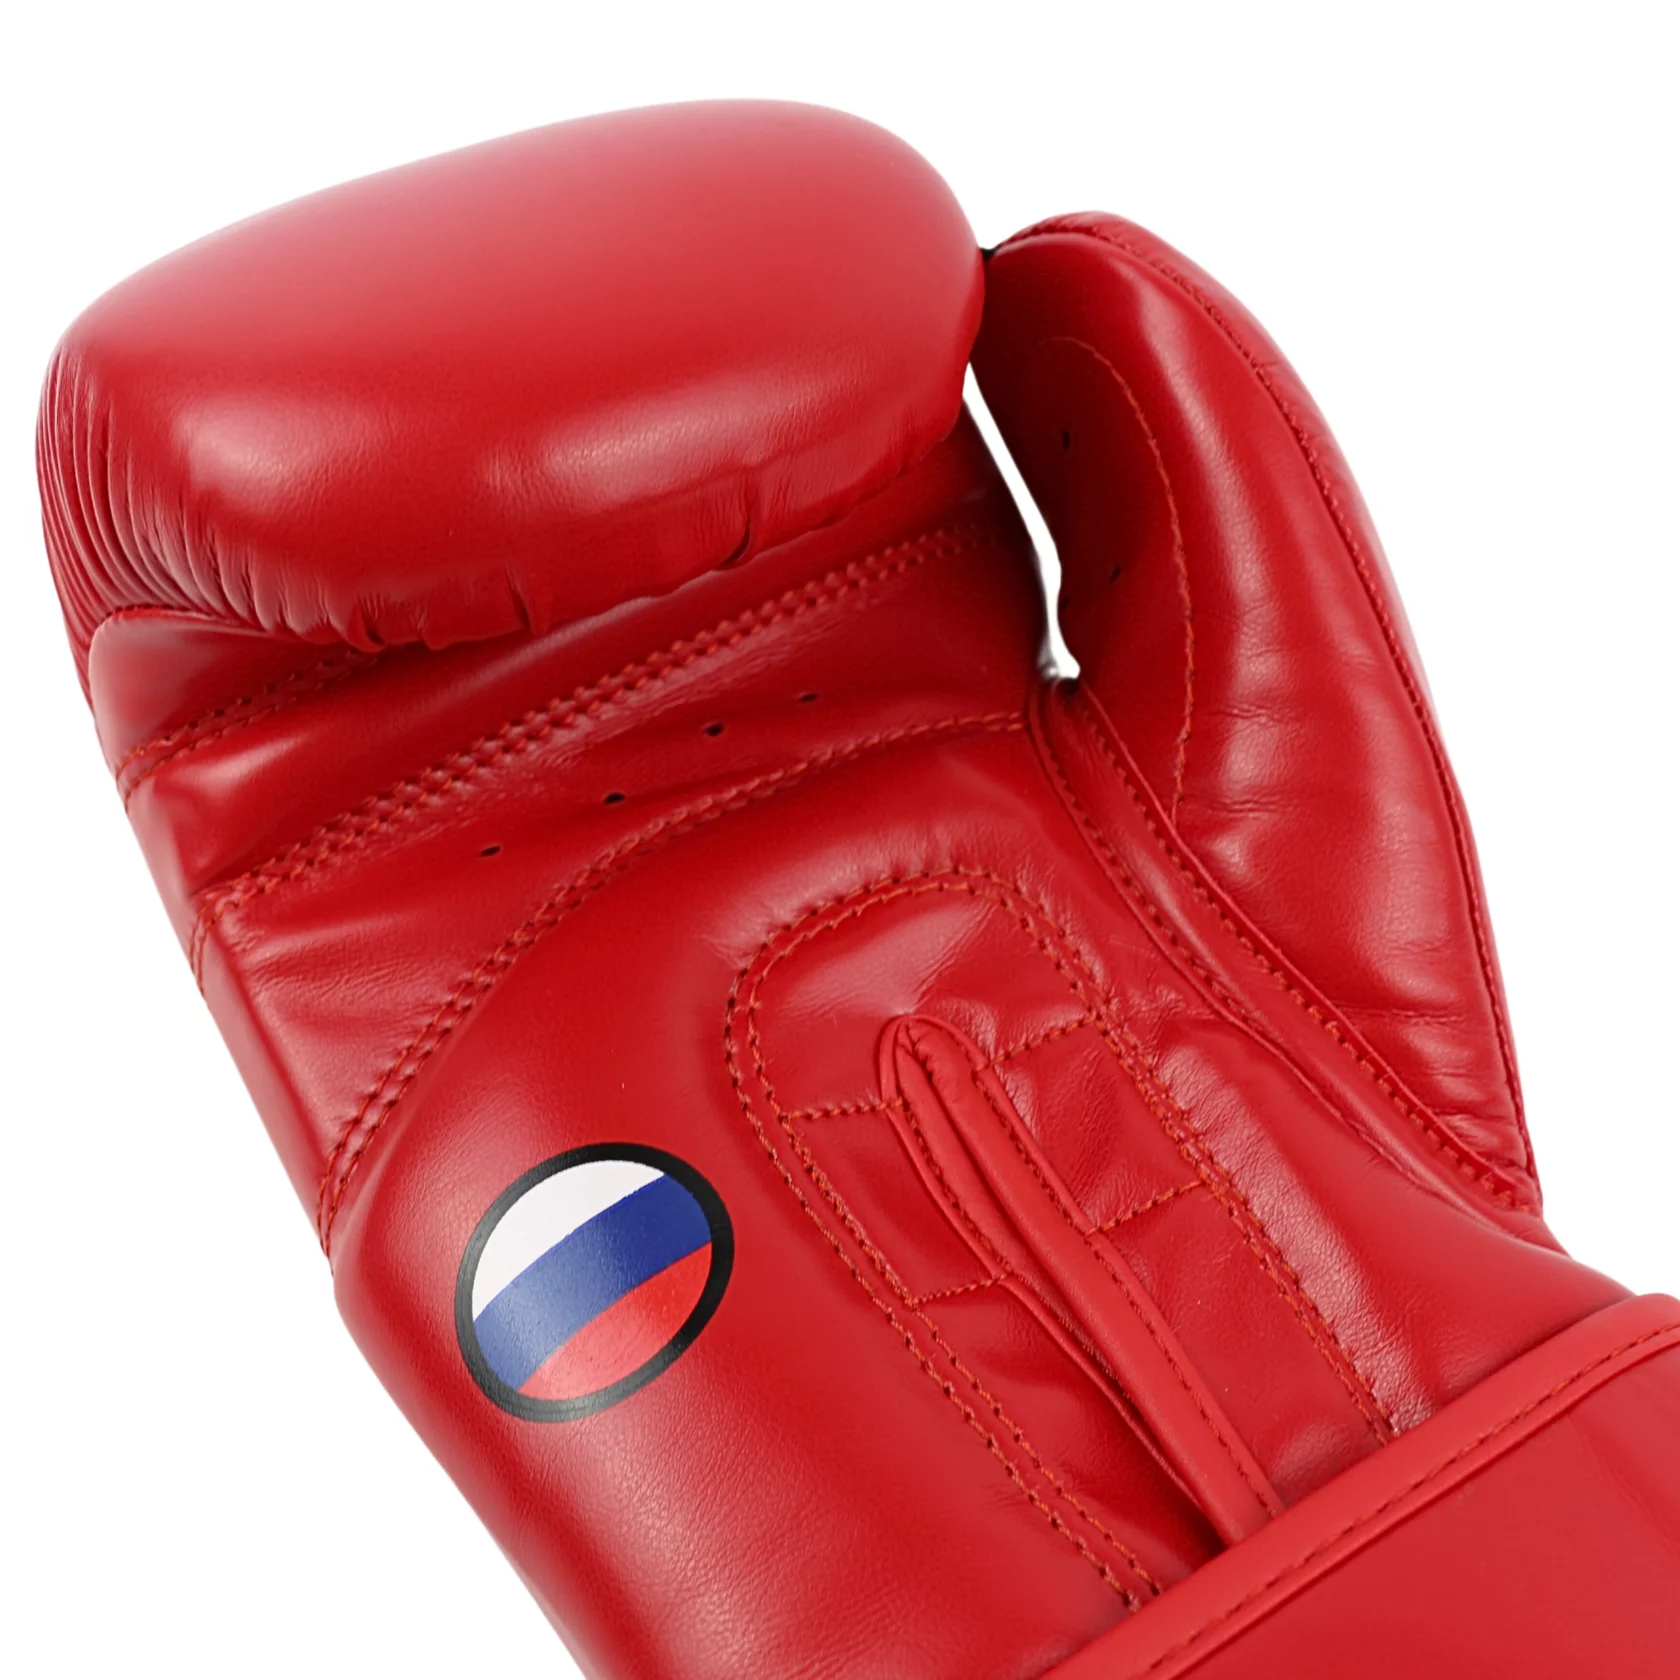  Боксерские перчатки BoyBo TITAN лицензированные красные 